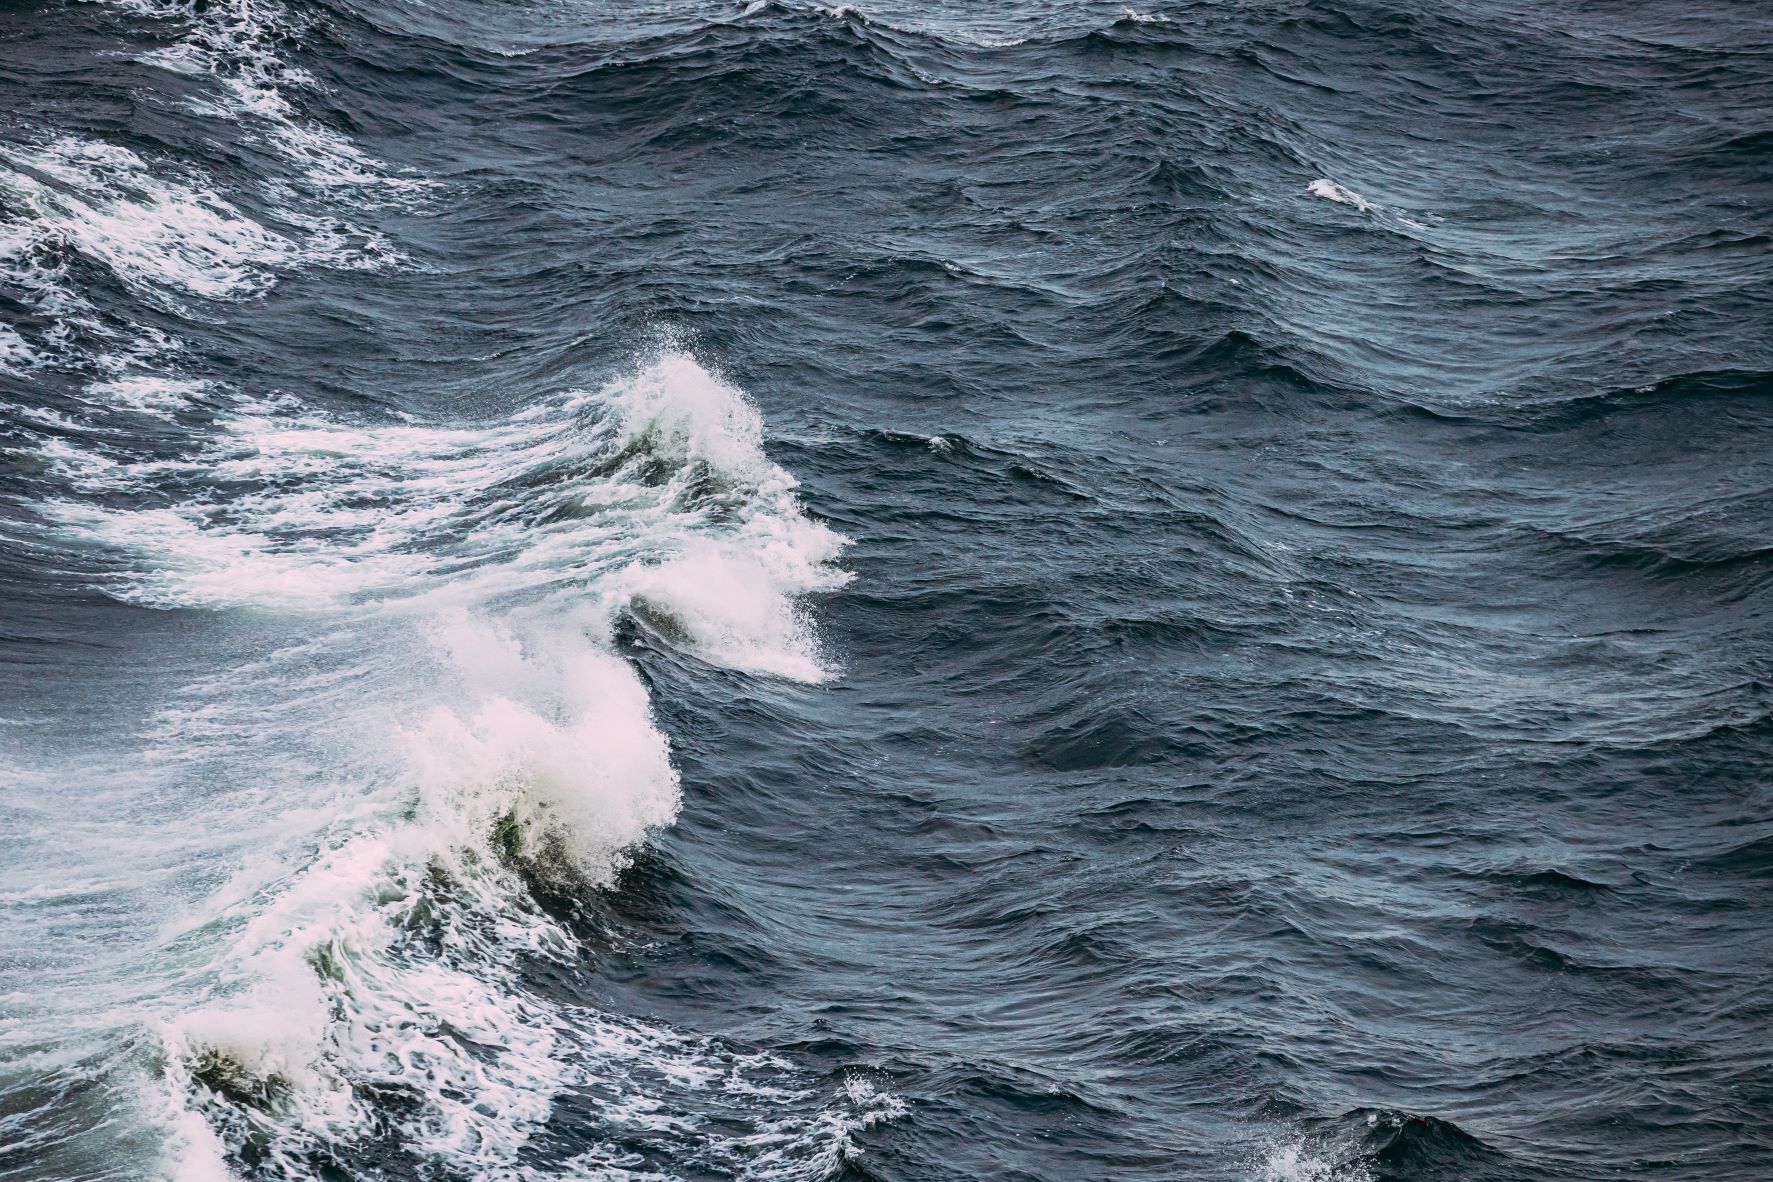 An image of ocean waves